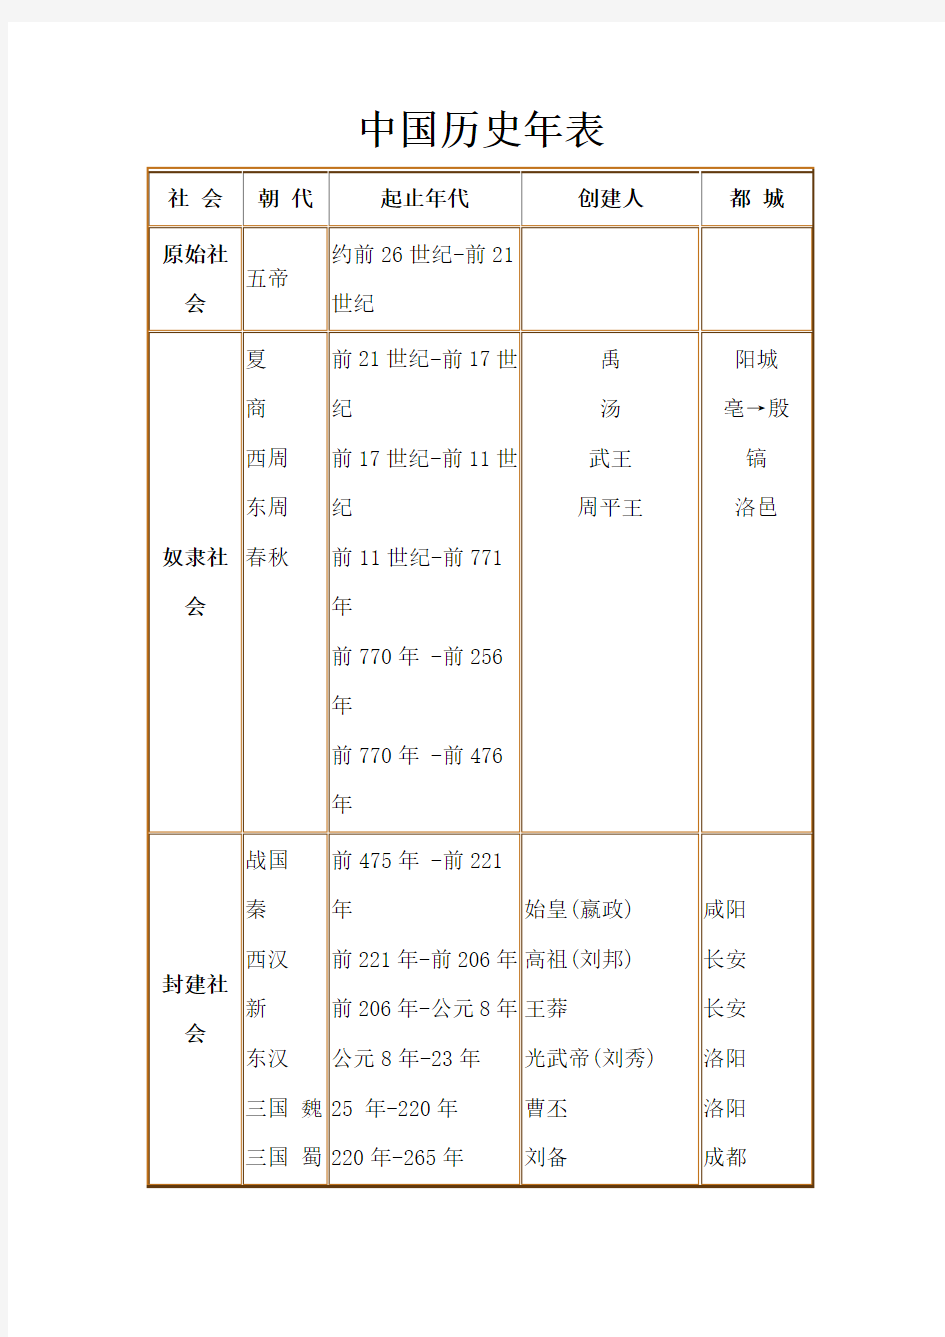 中国历史纪年表(最详细版)